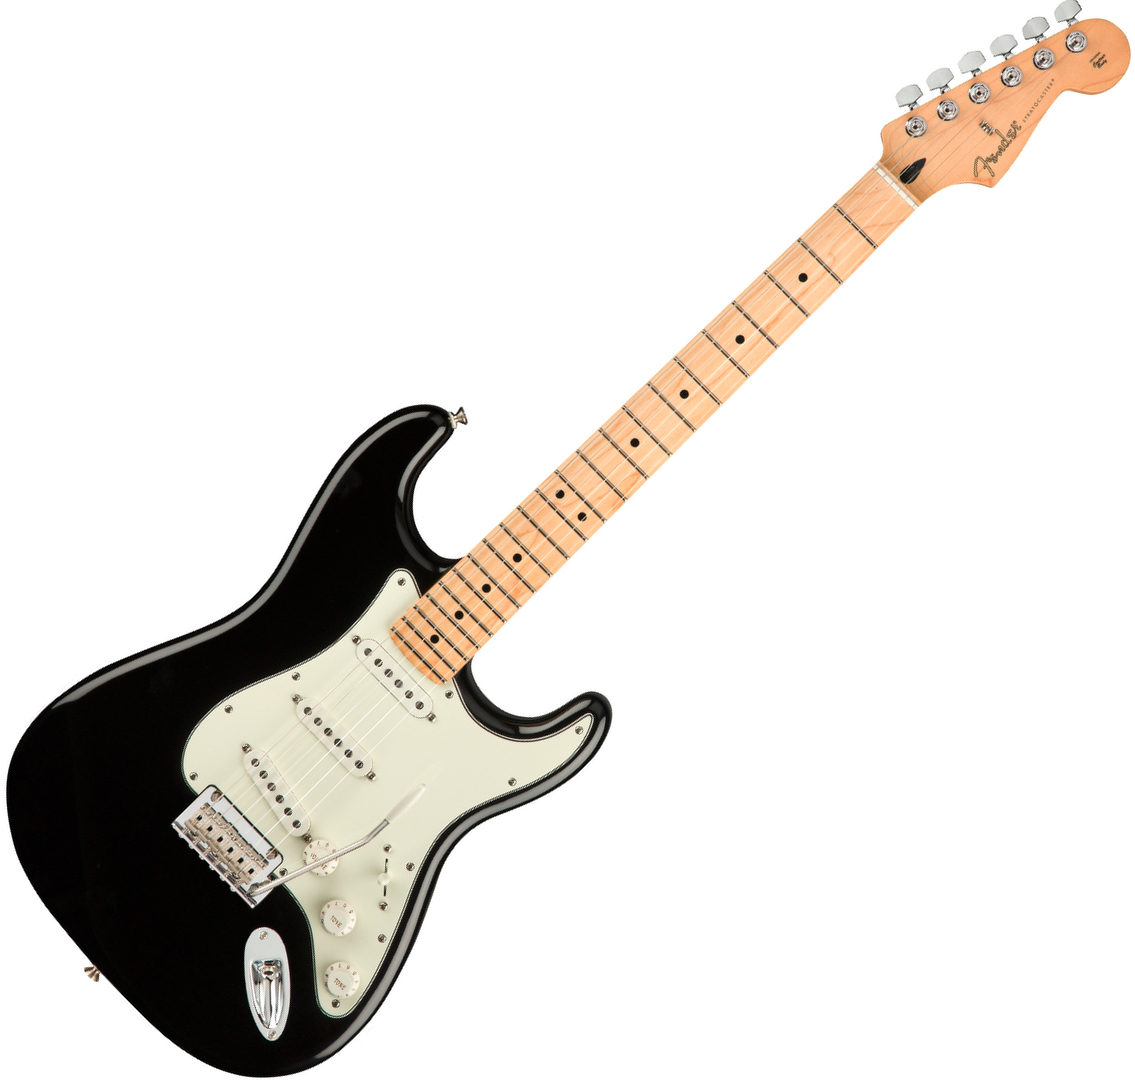 Fender Stratocaster Player black